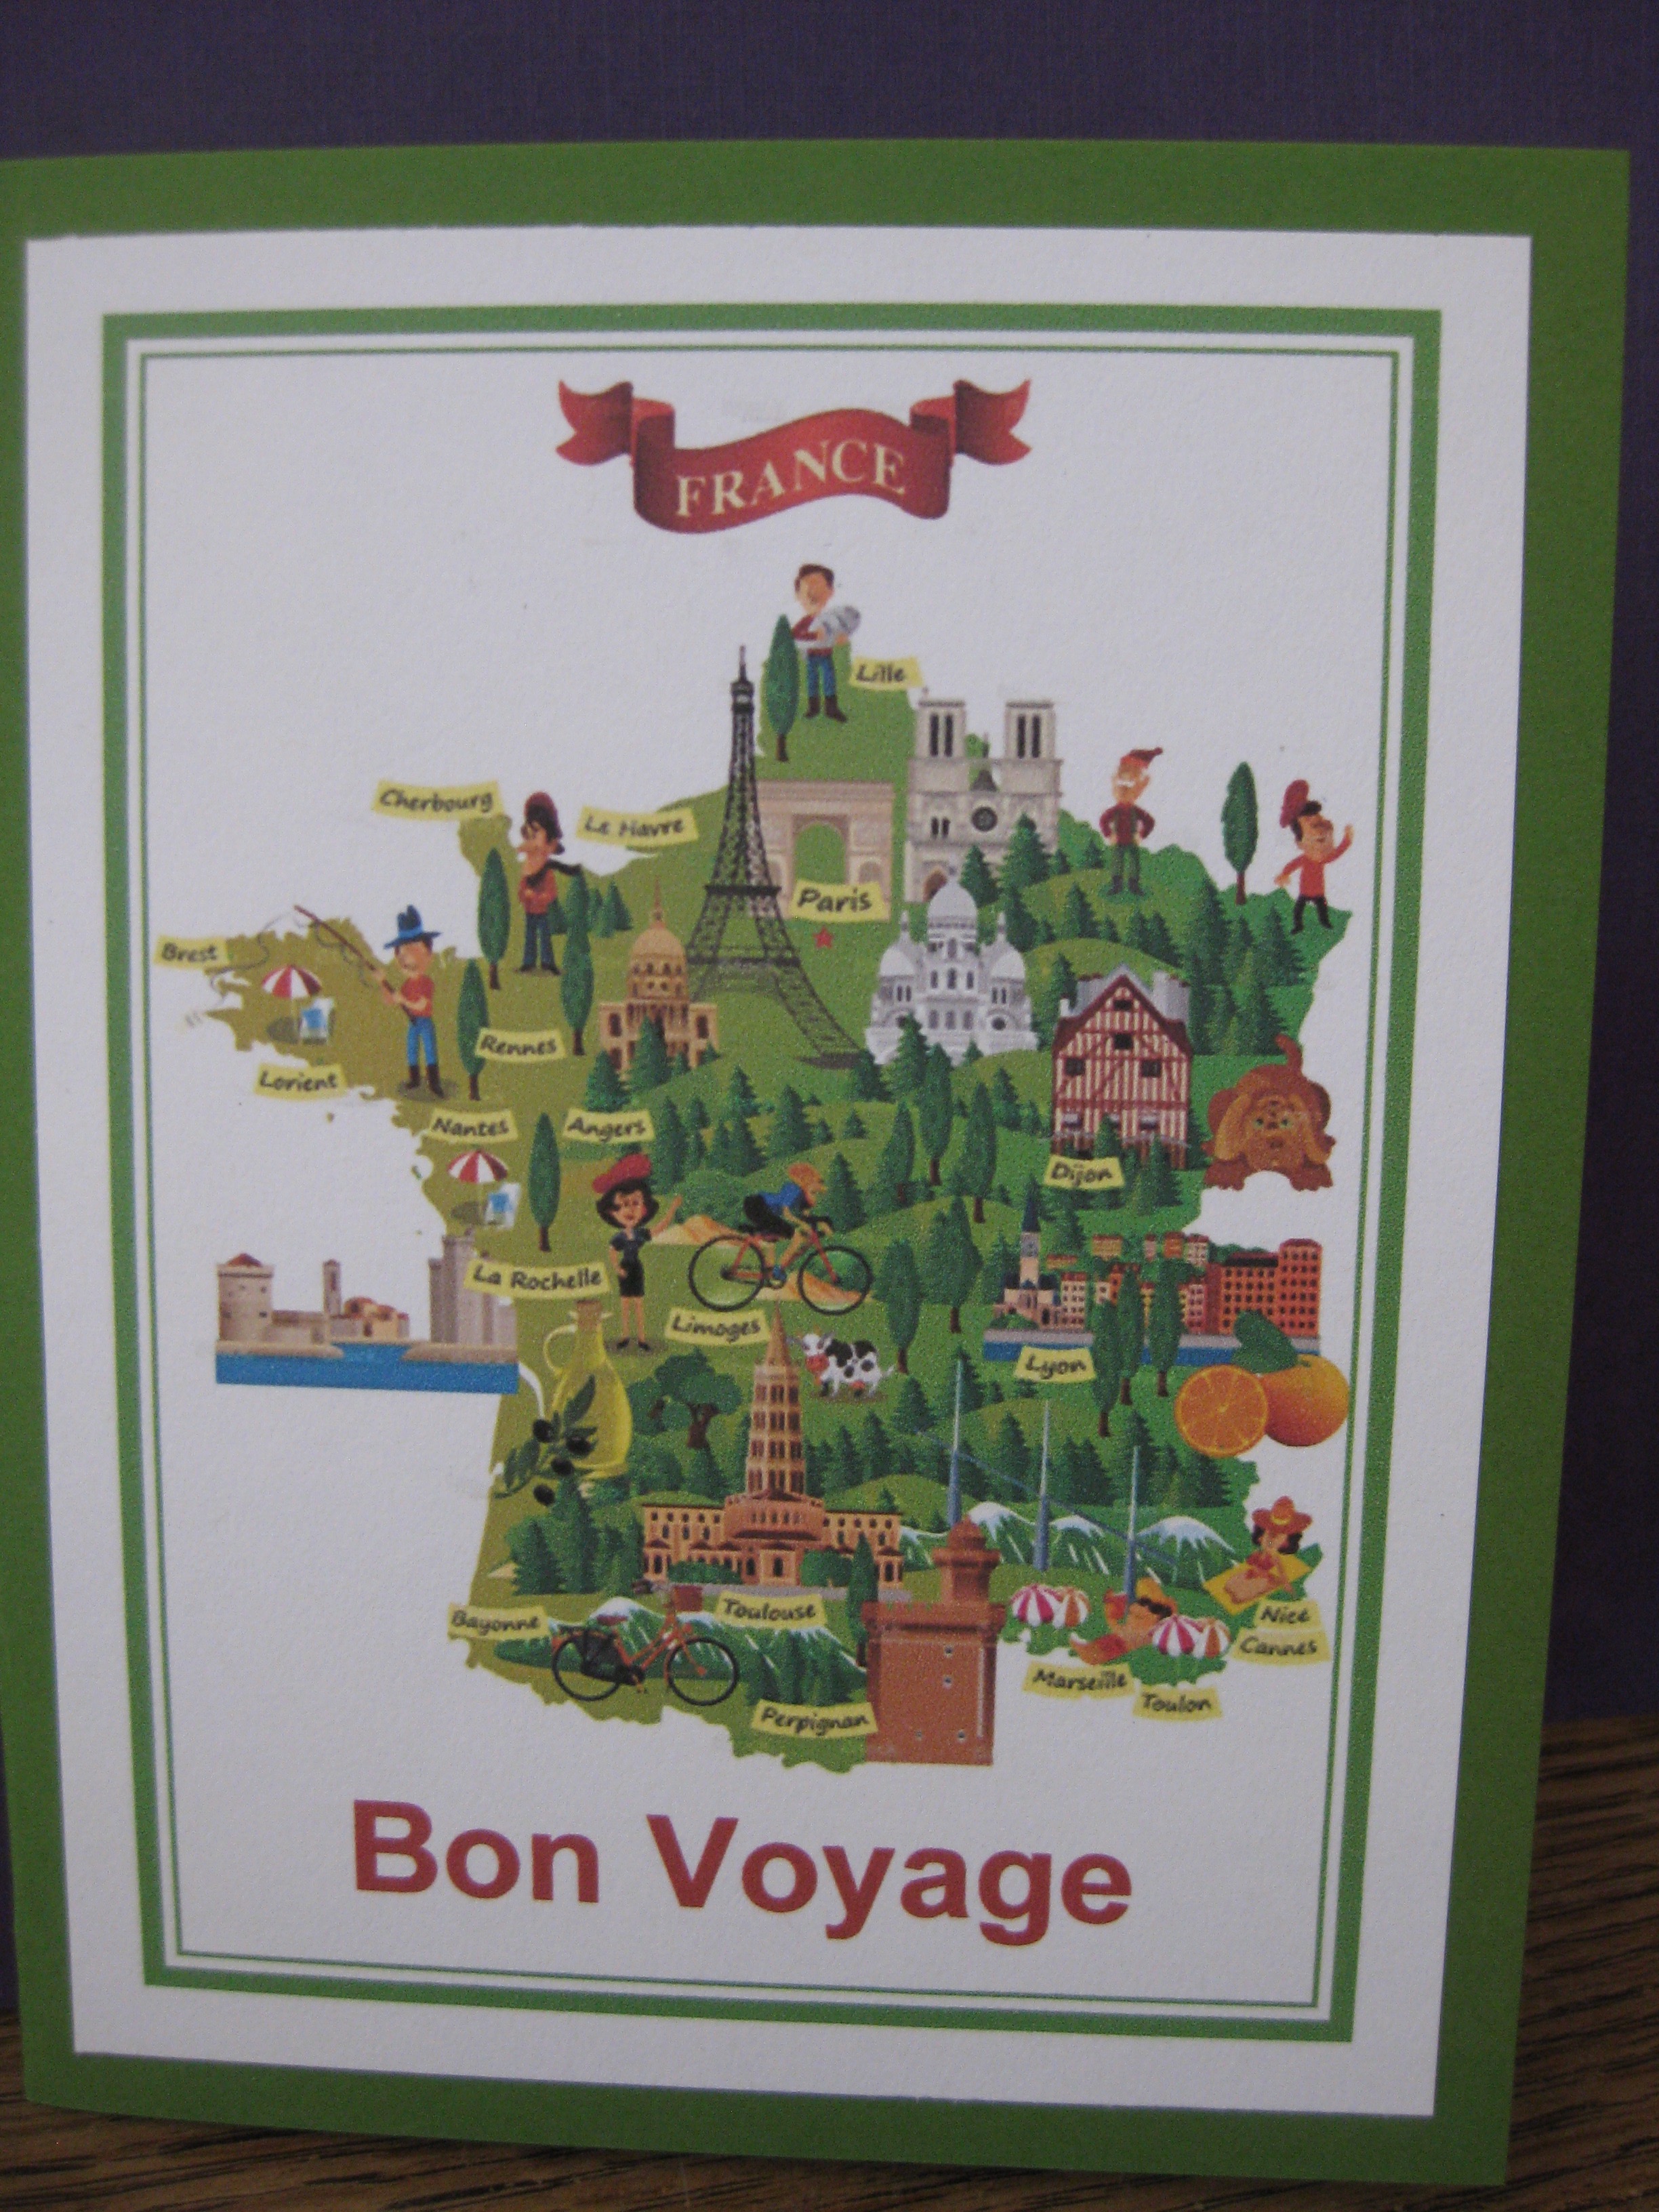 France/Bon Voyage